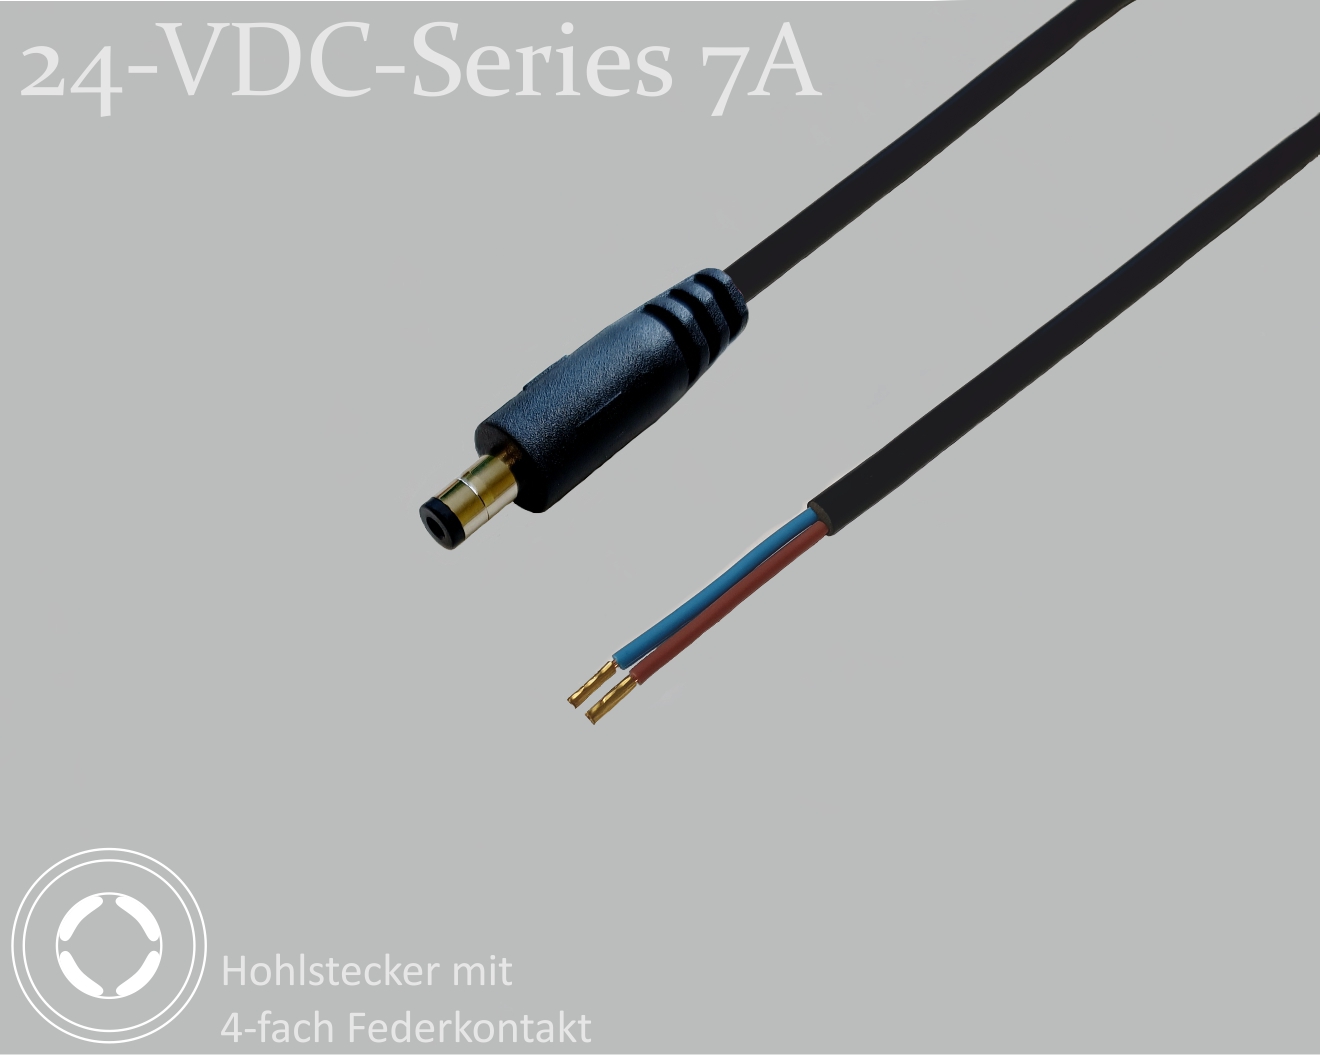 24-VDC-Series 7A, DC-Anschlusskabel, DC-Stecker mit 4-Federkontakt 2,1x5,5x9,5mm, Rundkabel 2x0,50mm², schwarz, Aderendhülsen, 0,75m